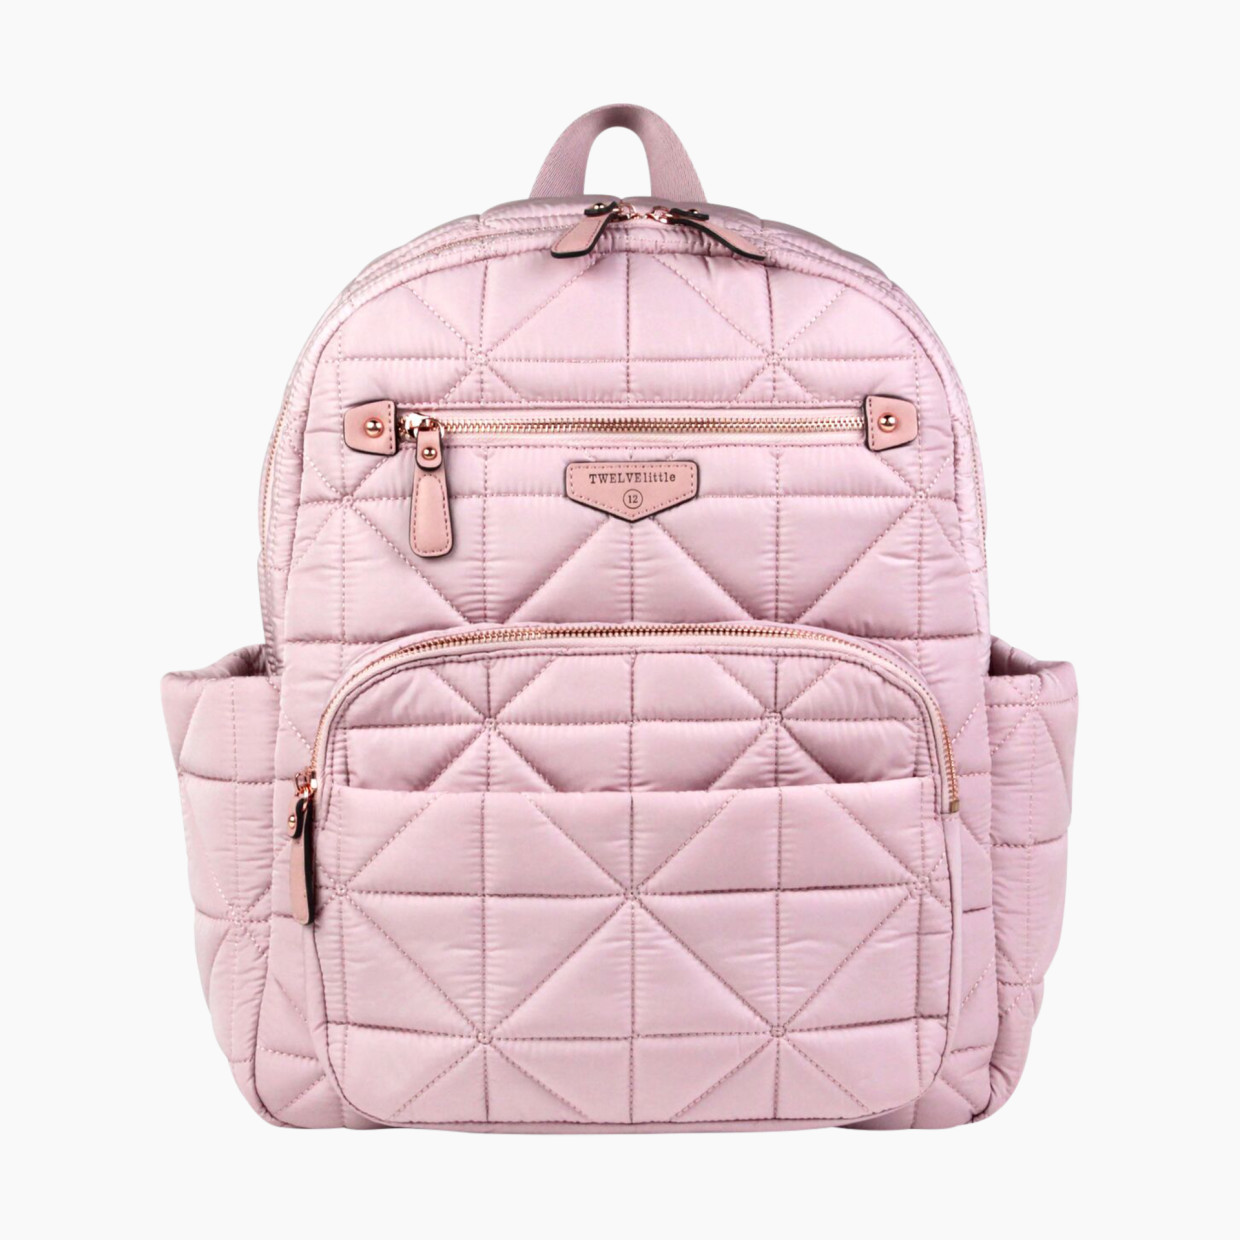 TWELVELittle Companion Backpack - Pink.